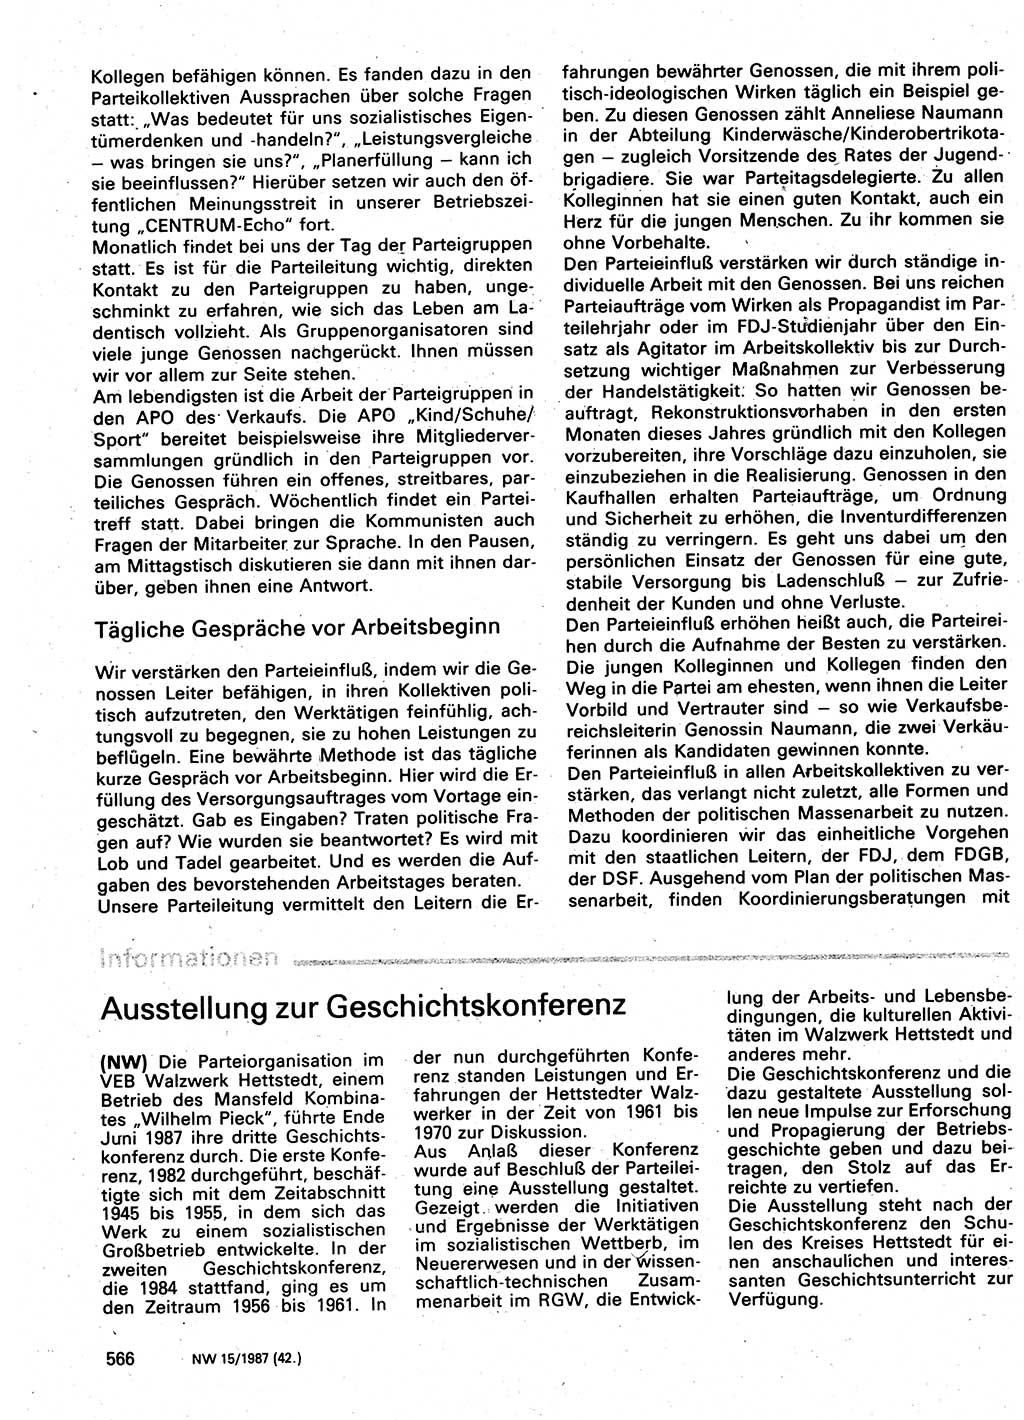 Neuer Weg (NW), Organ des Zentralkomitees (ZK) der SED (Sozialistische Einheitspartei Deutschlands) für Fragen des Parteilebens, 42. Jahrgang [Deutsche Demokratische Republik (DDR)] 1987, Seite 566 (NW ZK SED DDR 1987, S. 566)